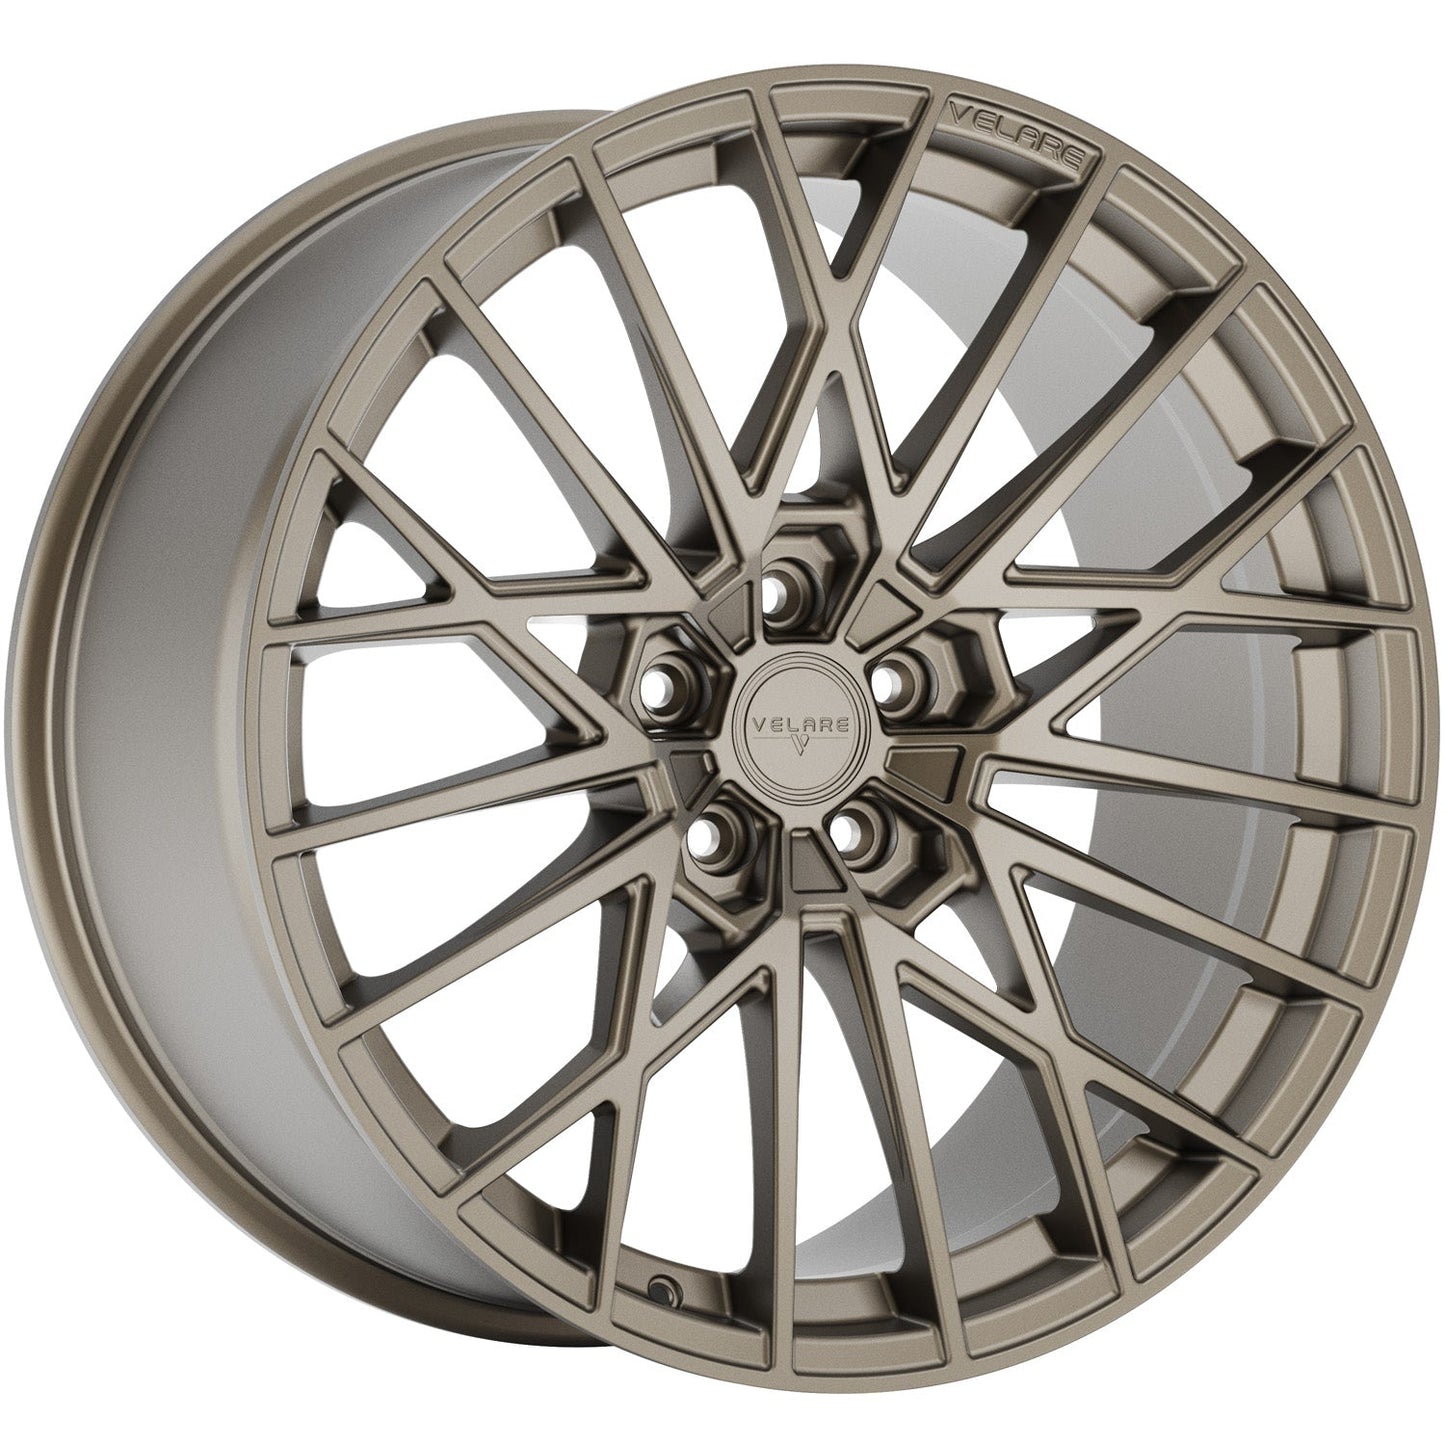 Velare-VLR07-Satin-Bronze-Bronze-20x8.5-72.6-wheels-rims-felger-Felghuset